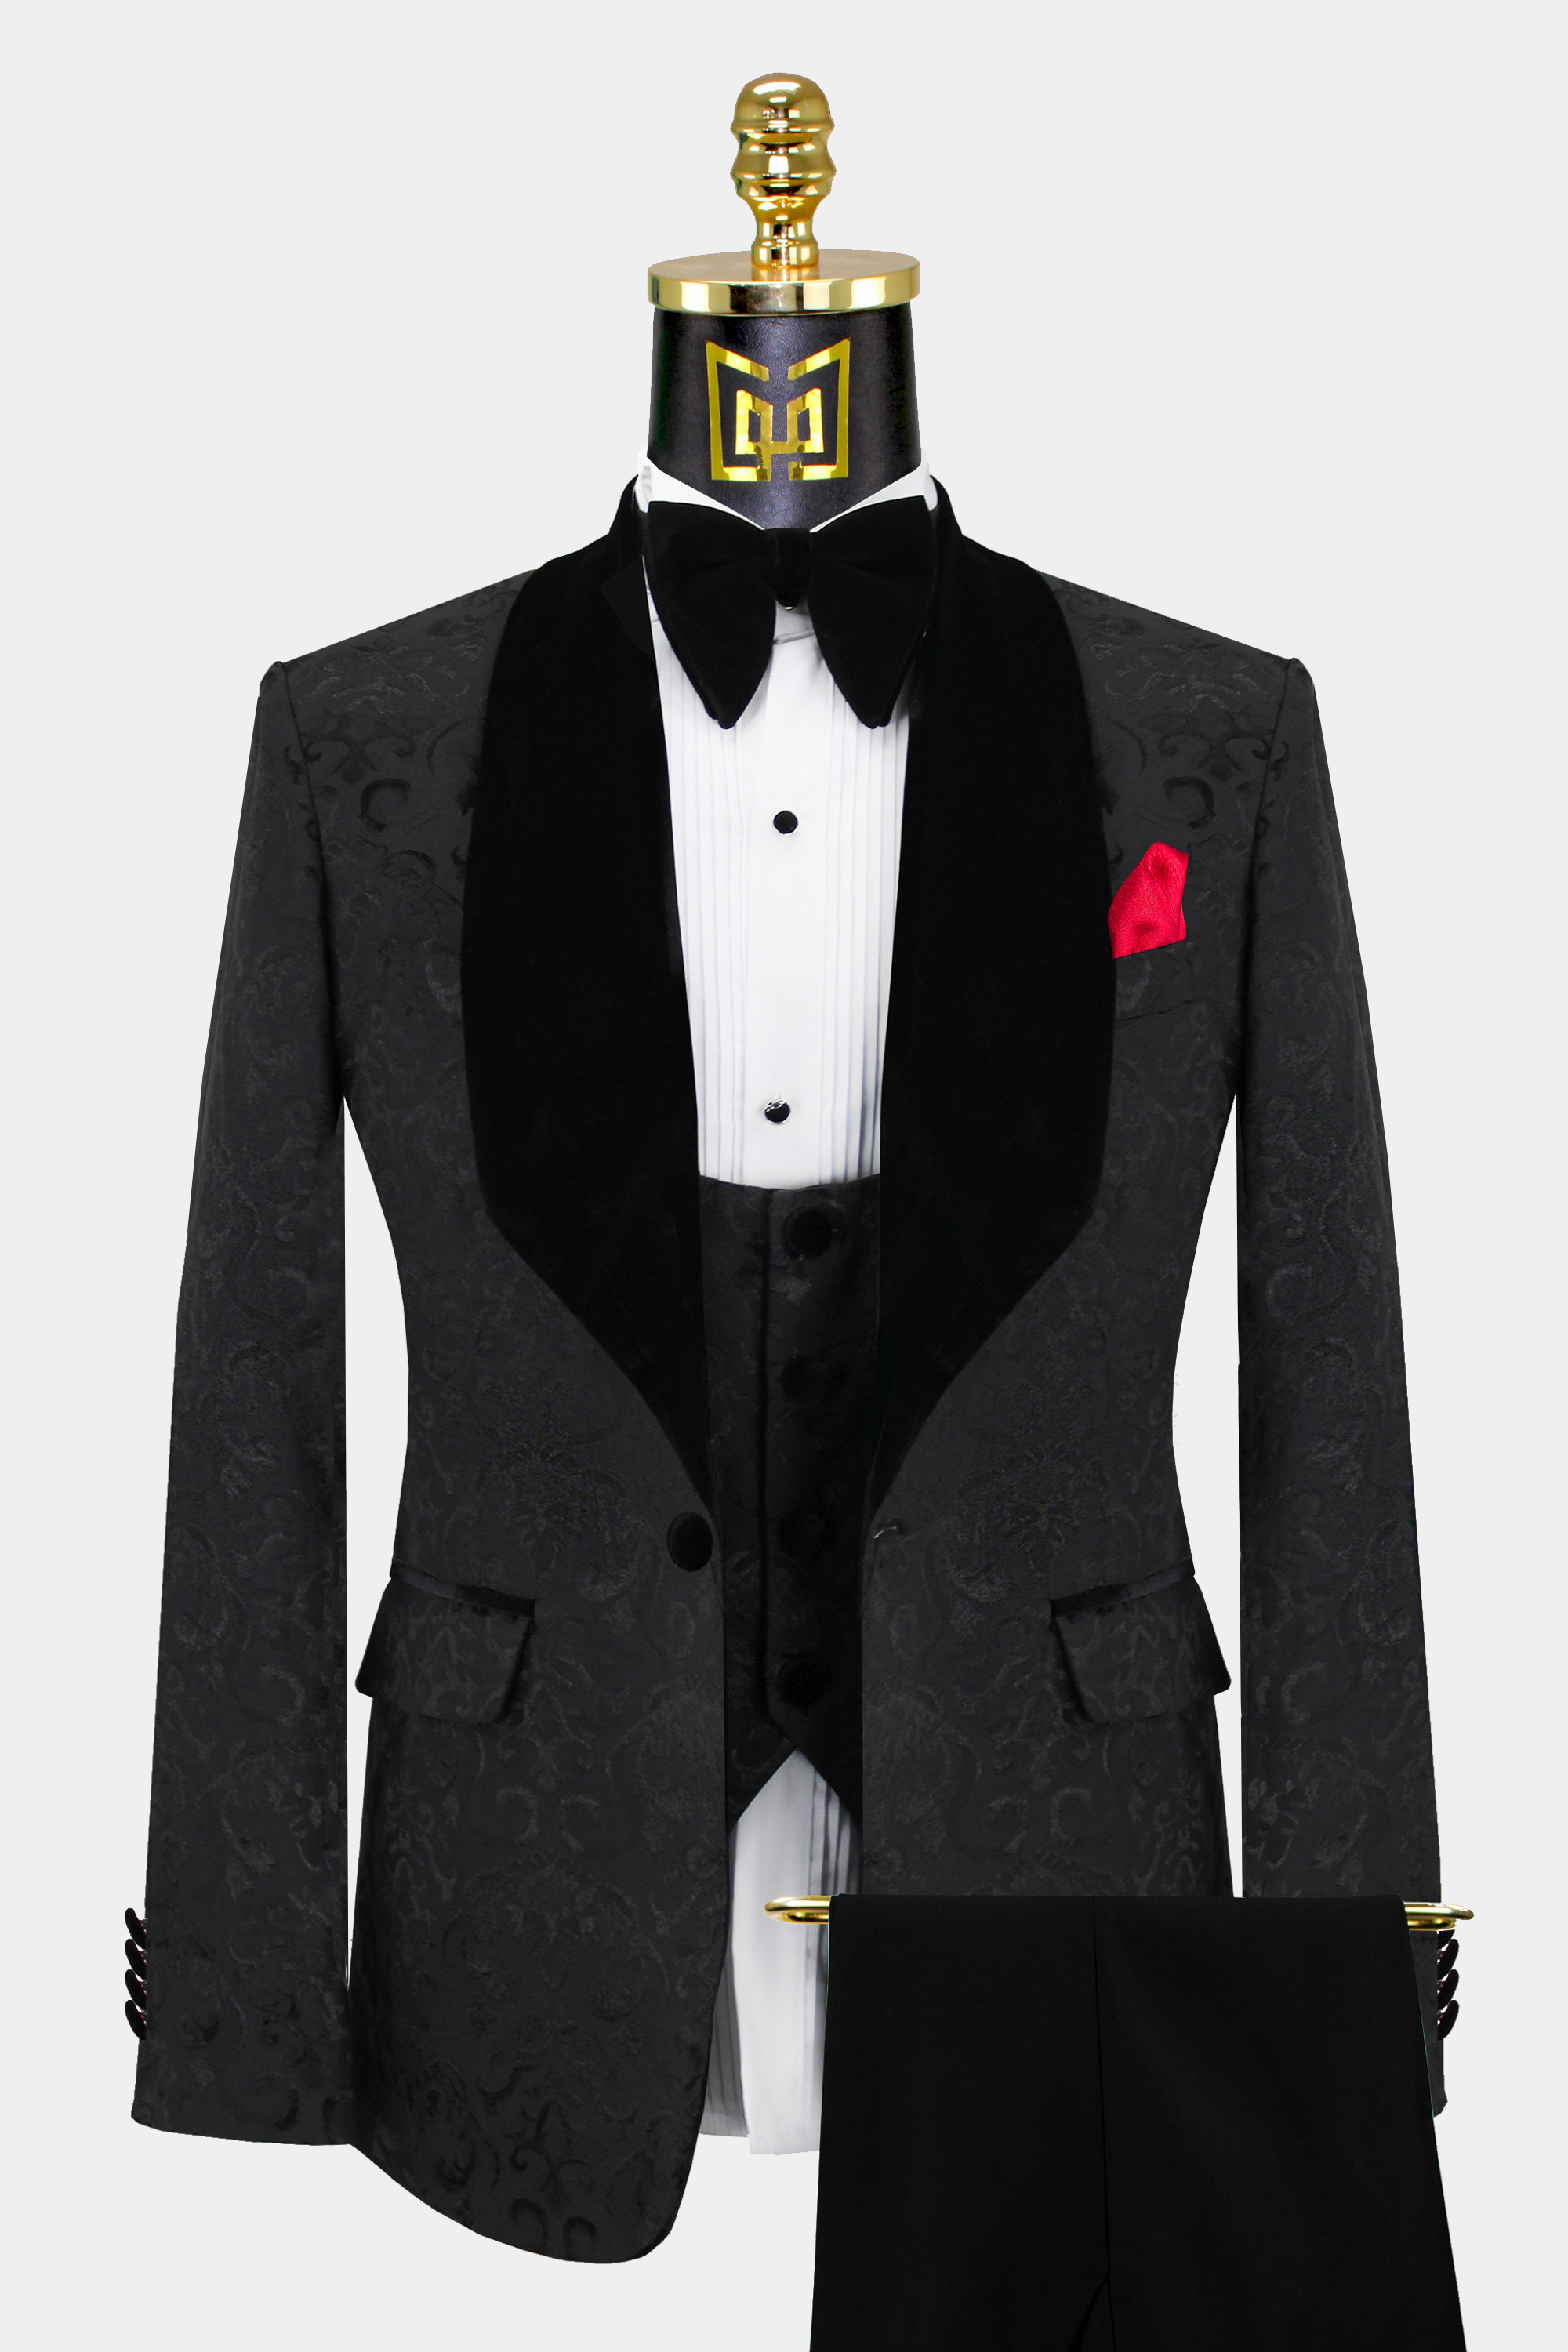 Mens-Black-Damask-Tuxedo-Wedding-Prom-Suit-Groom-Jacket-from-Gentlemansguru.com